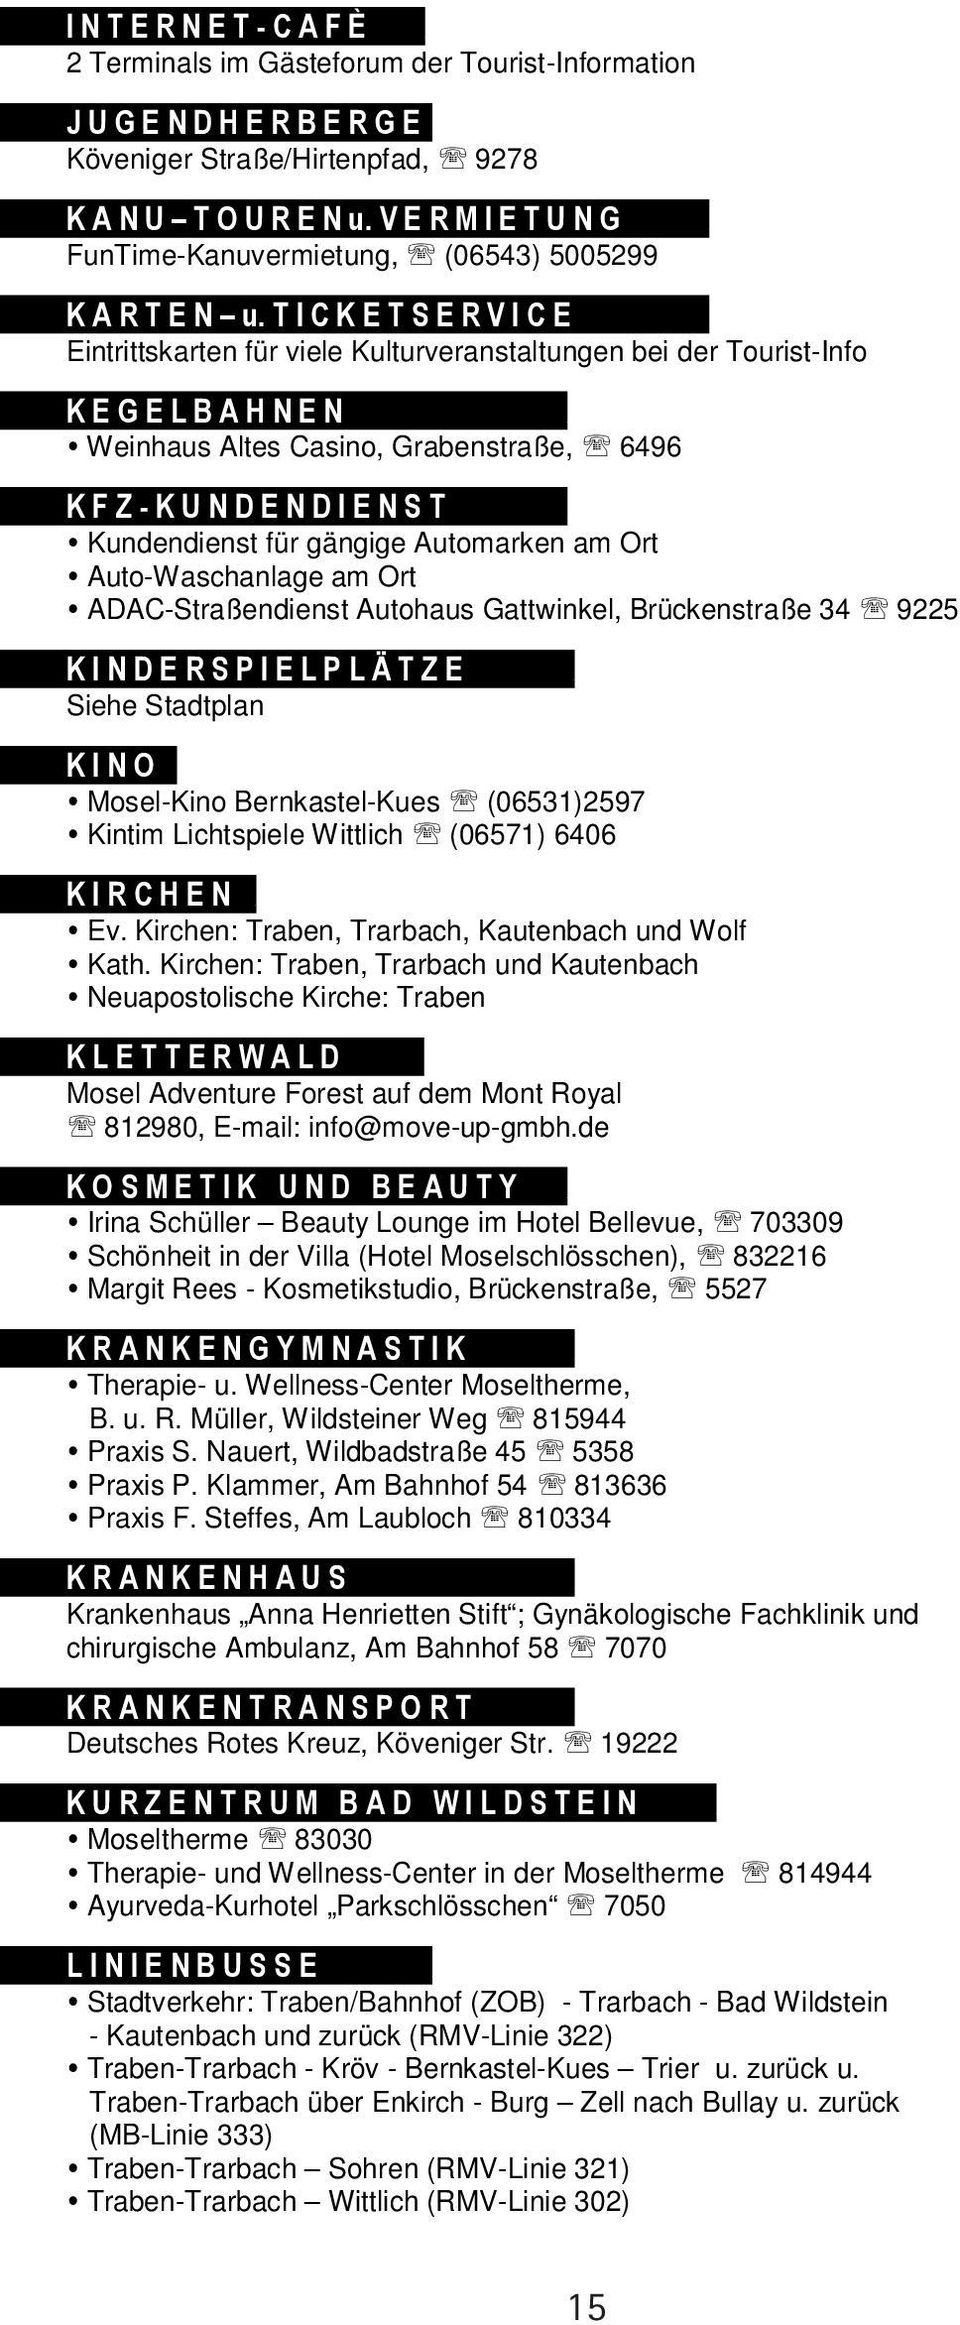 Bernkastel-Kues (06531)2597 Kintim Lichtspiele Wittlich (06571) 6406 Ev. Kirchen: Traben, Trarbach, Kautenbach und Wolf Kath.